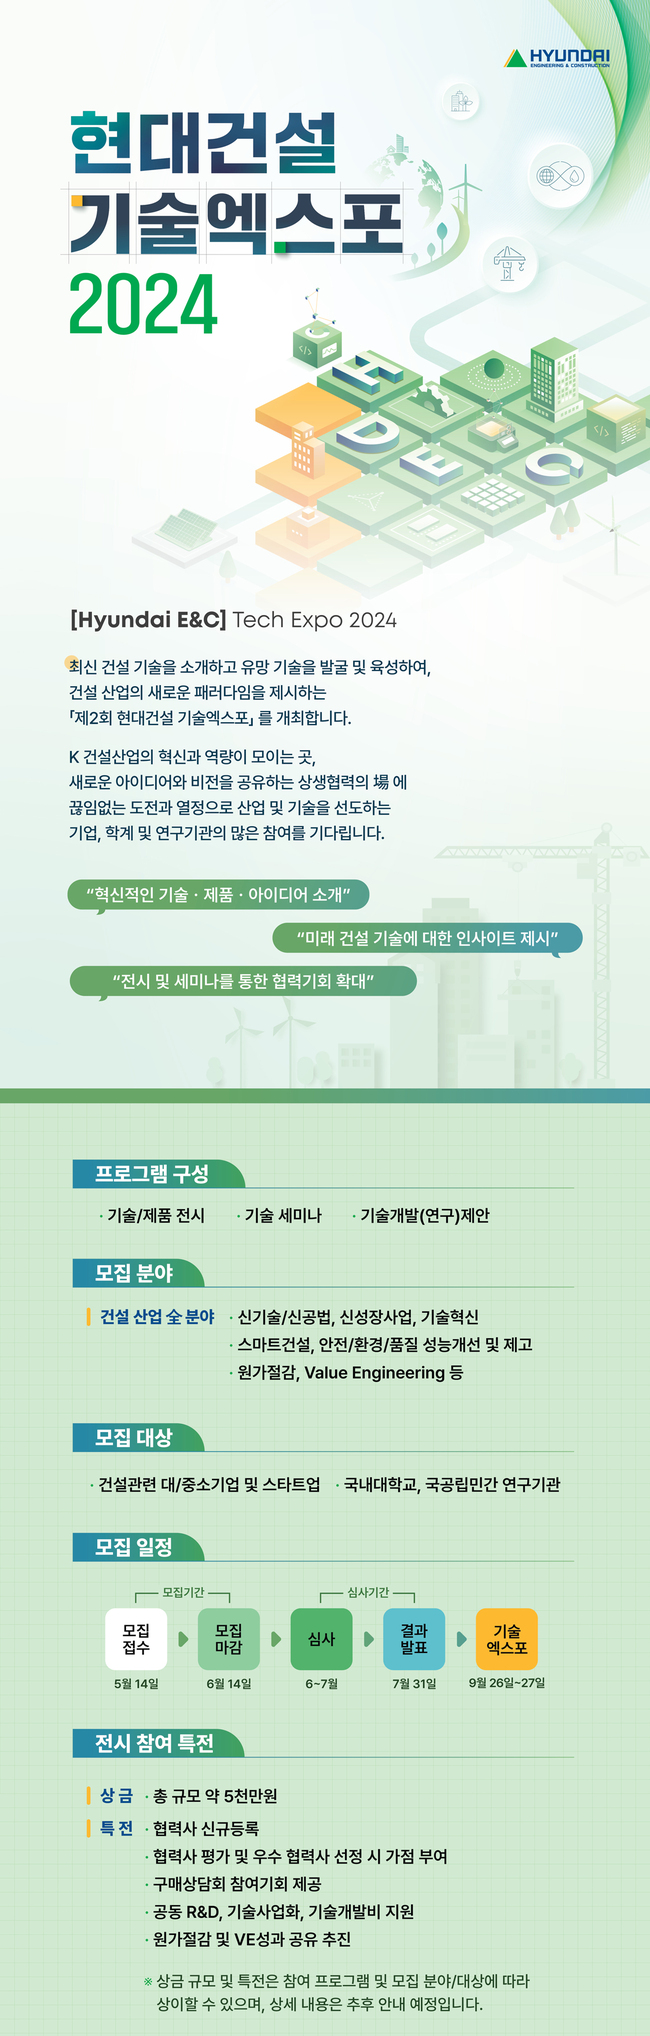 현대건설, K-건설 경쟁력 높인다…기술엑스포 2024 참여 모집